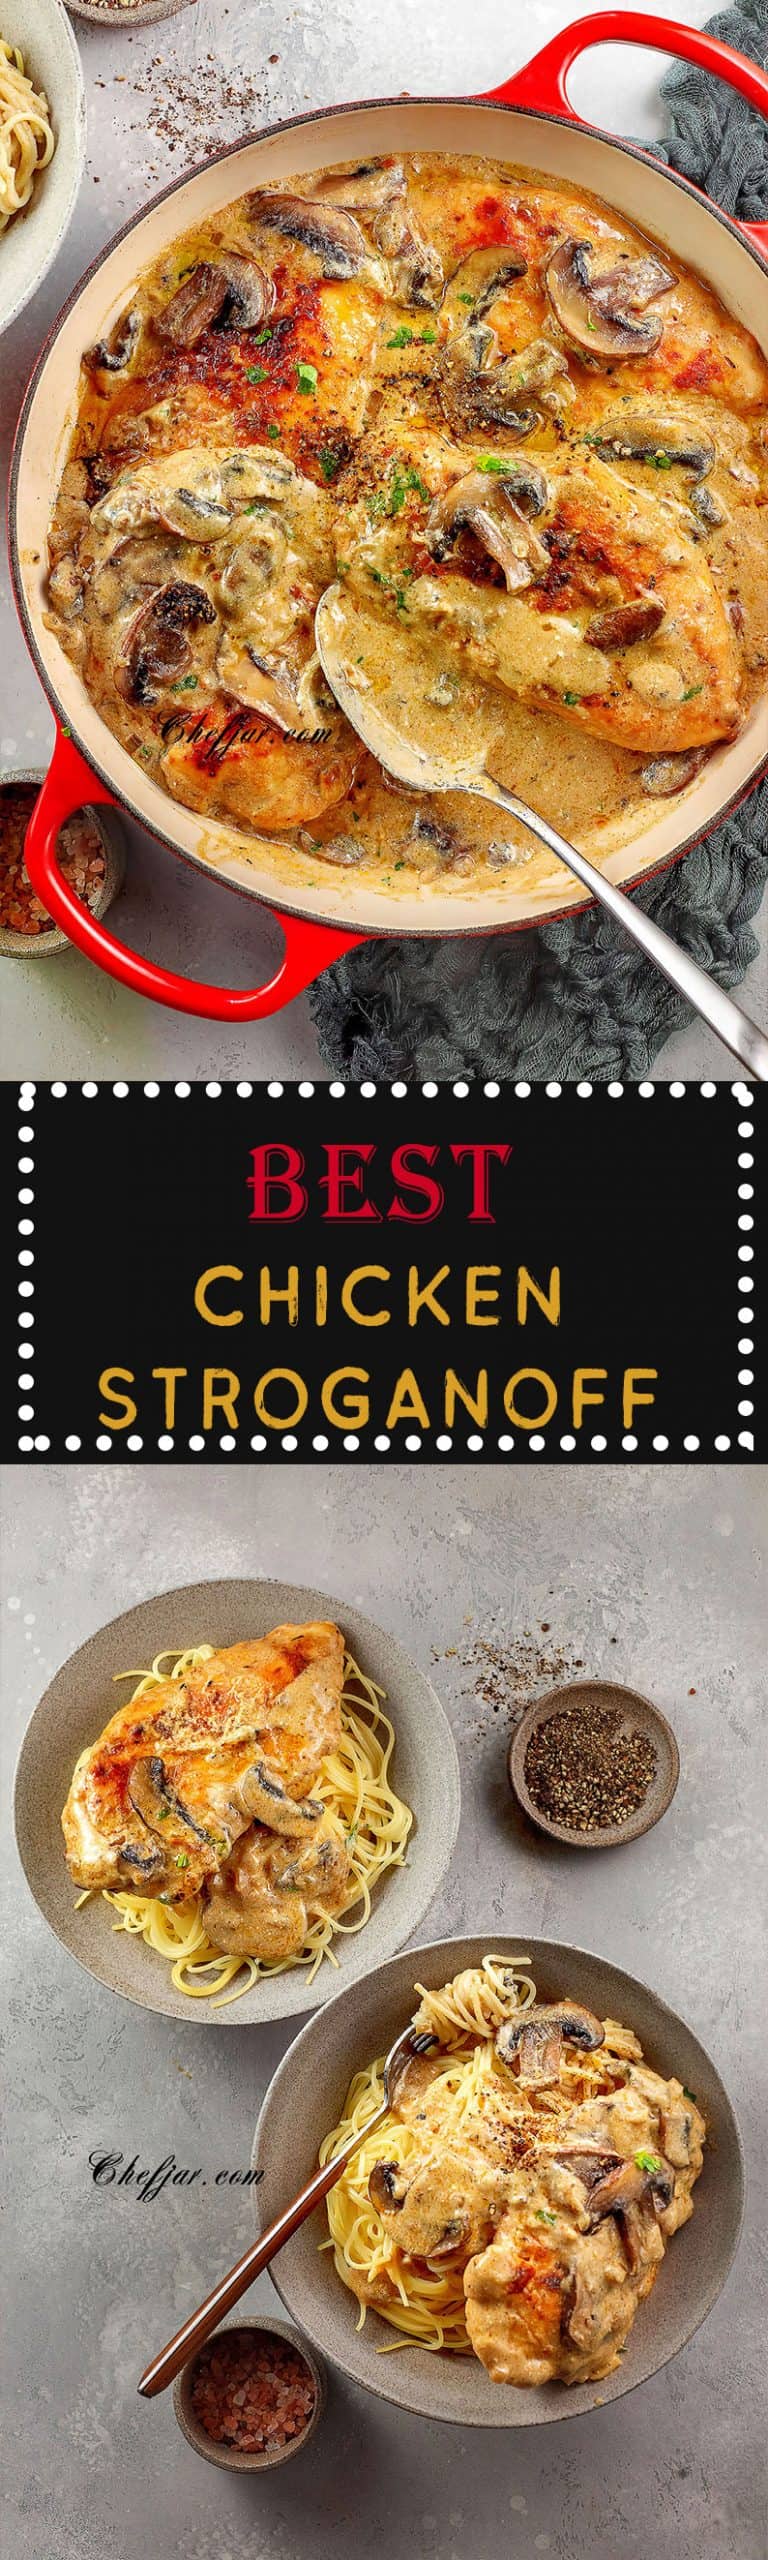 chicken-stroganoff